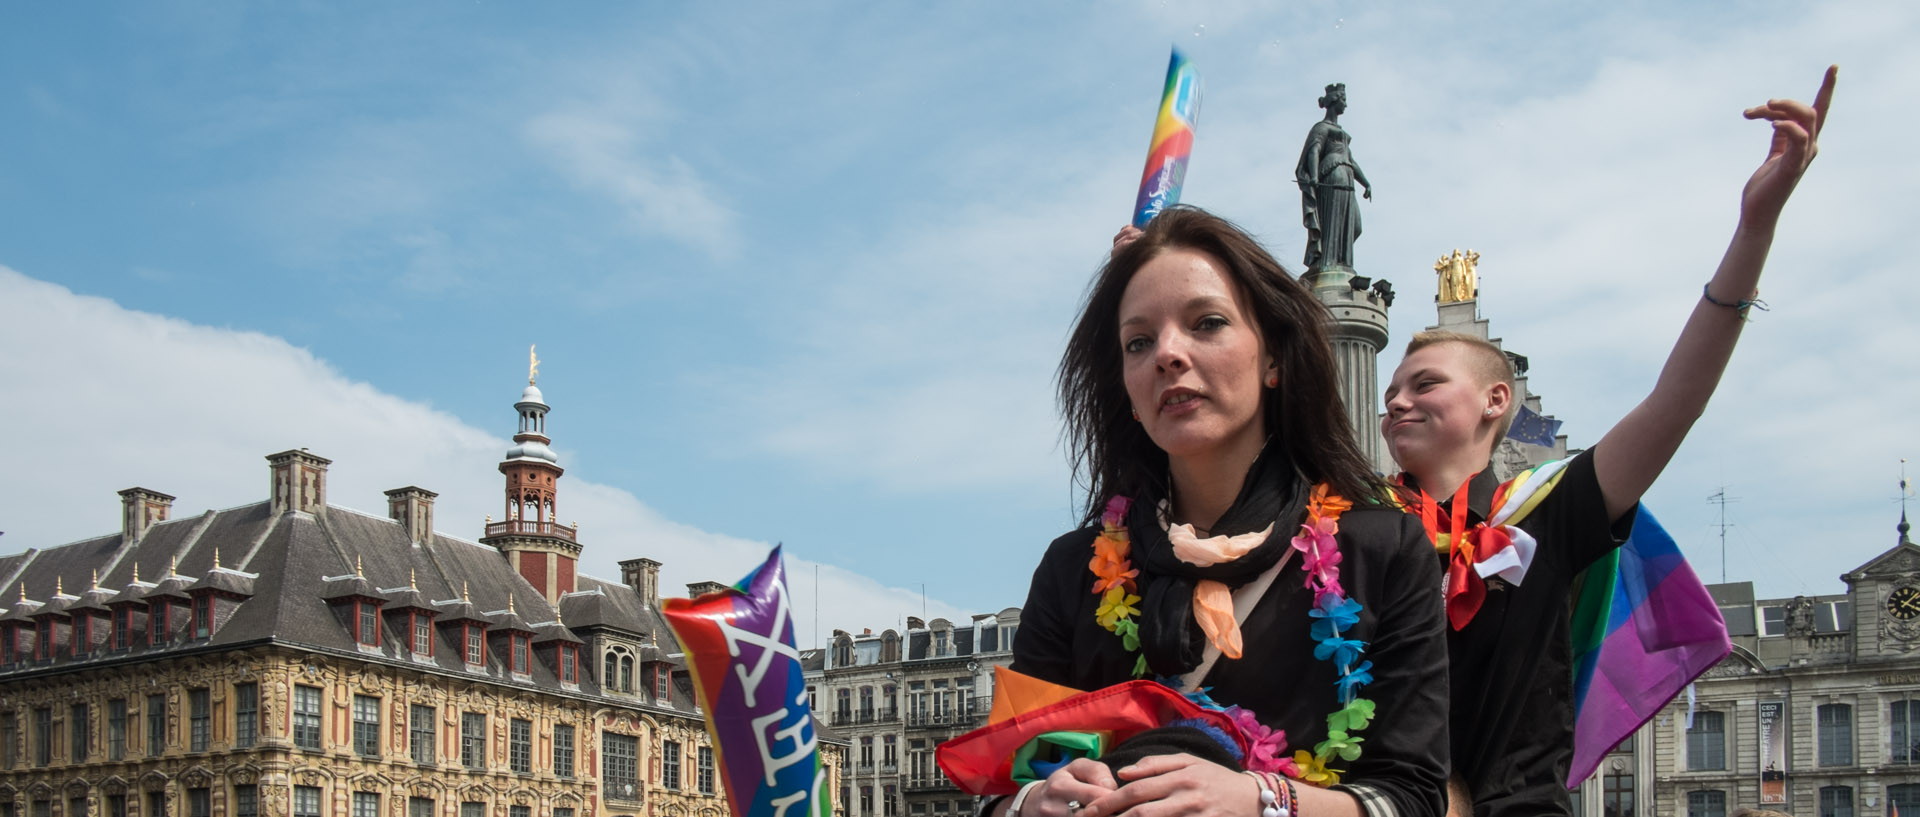 Samedi 1er juin 2013, 16:09, défilé de la lesbian et gay pride, place du Général-de-Gaulle, Lille